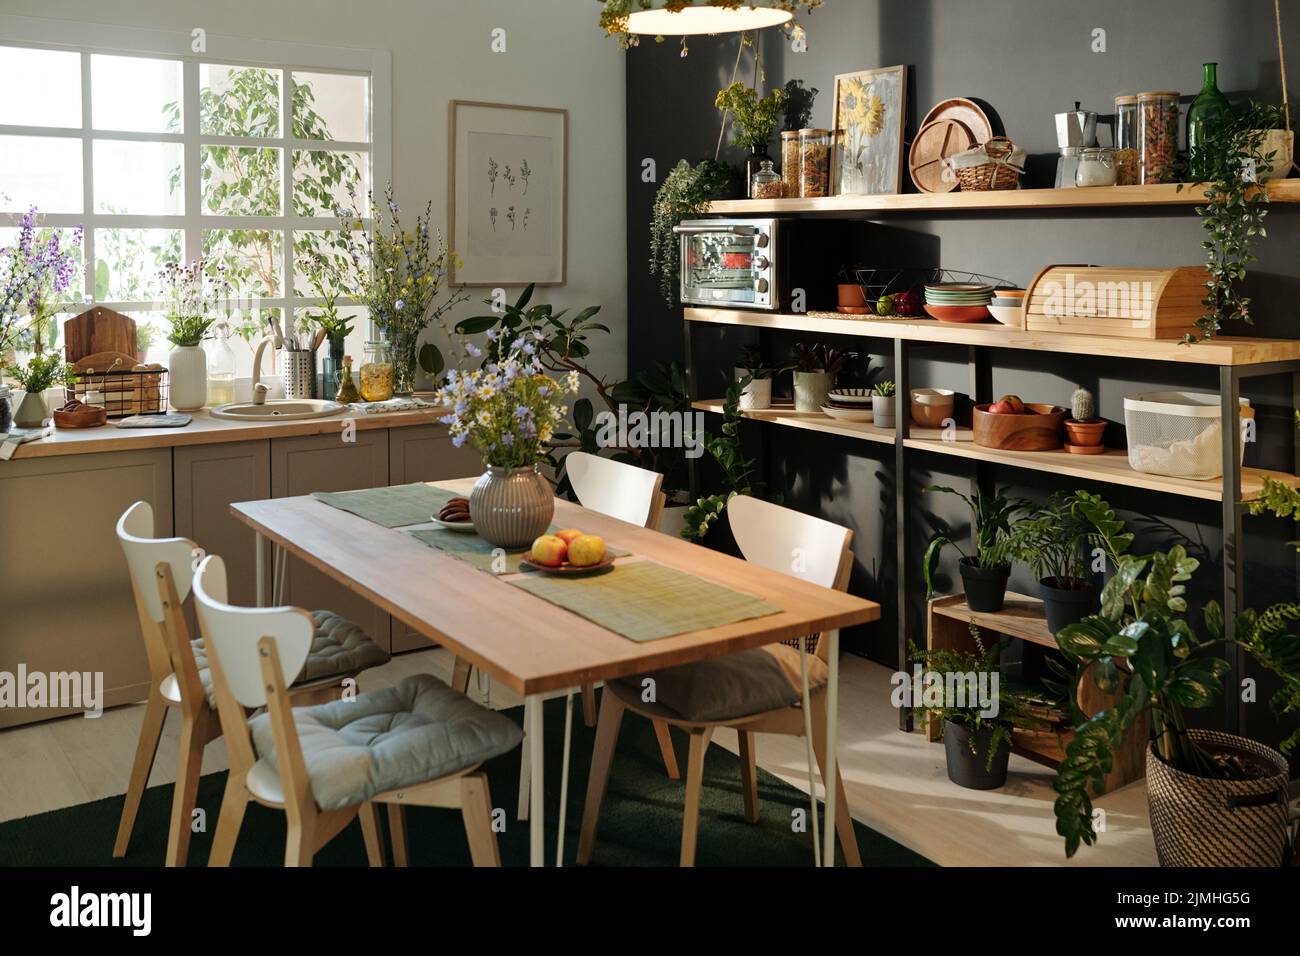 Parte de la cocina espaciosa y acogedora con mesa sostenible, utensilios de cocina y plantas de la casa creando un ambiente de recarga y relax Foto de stock